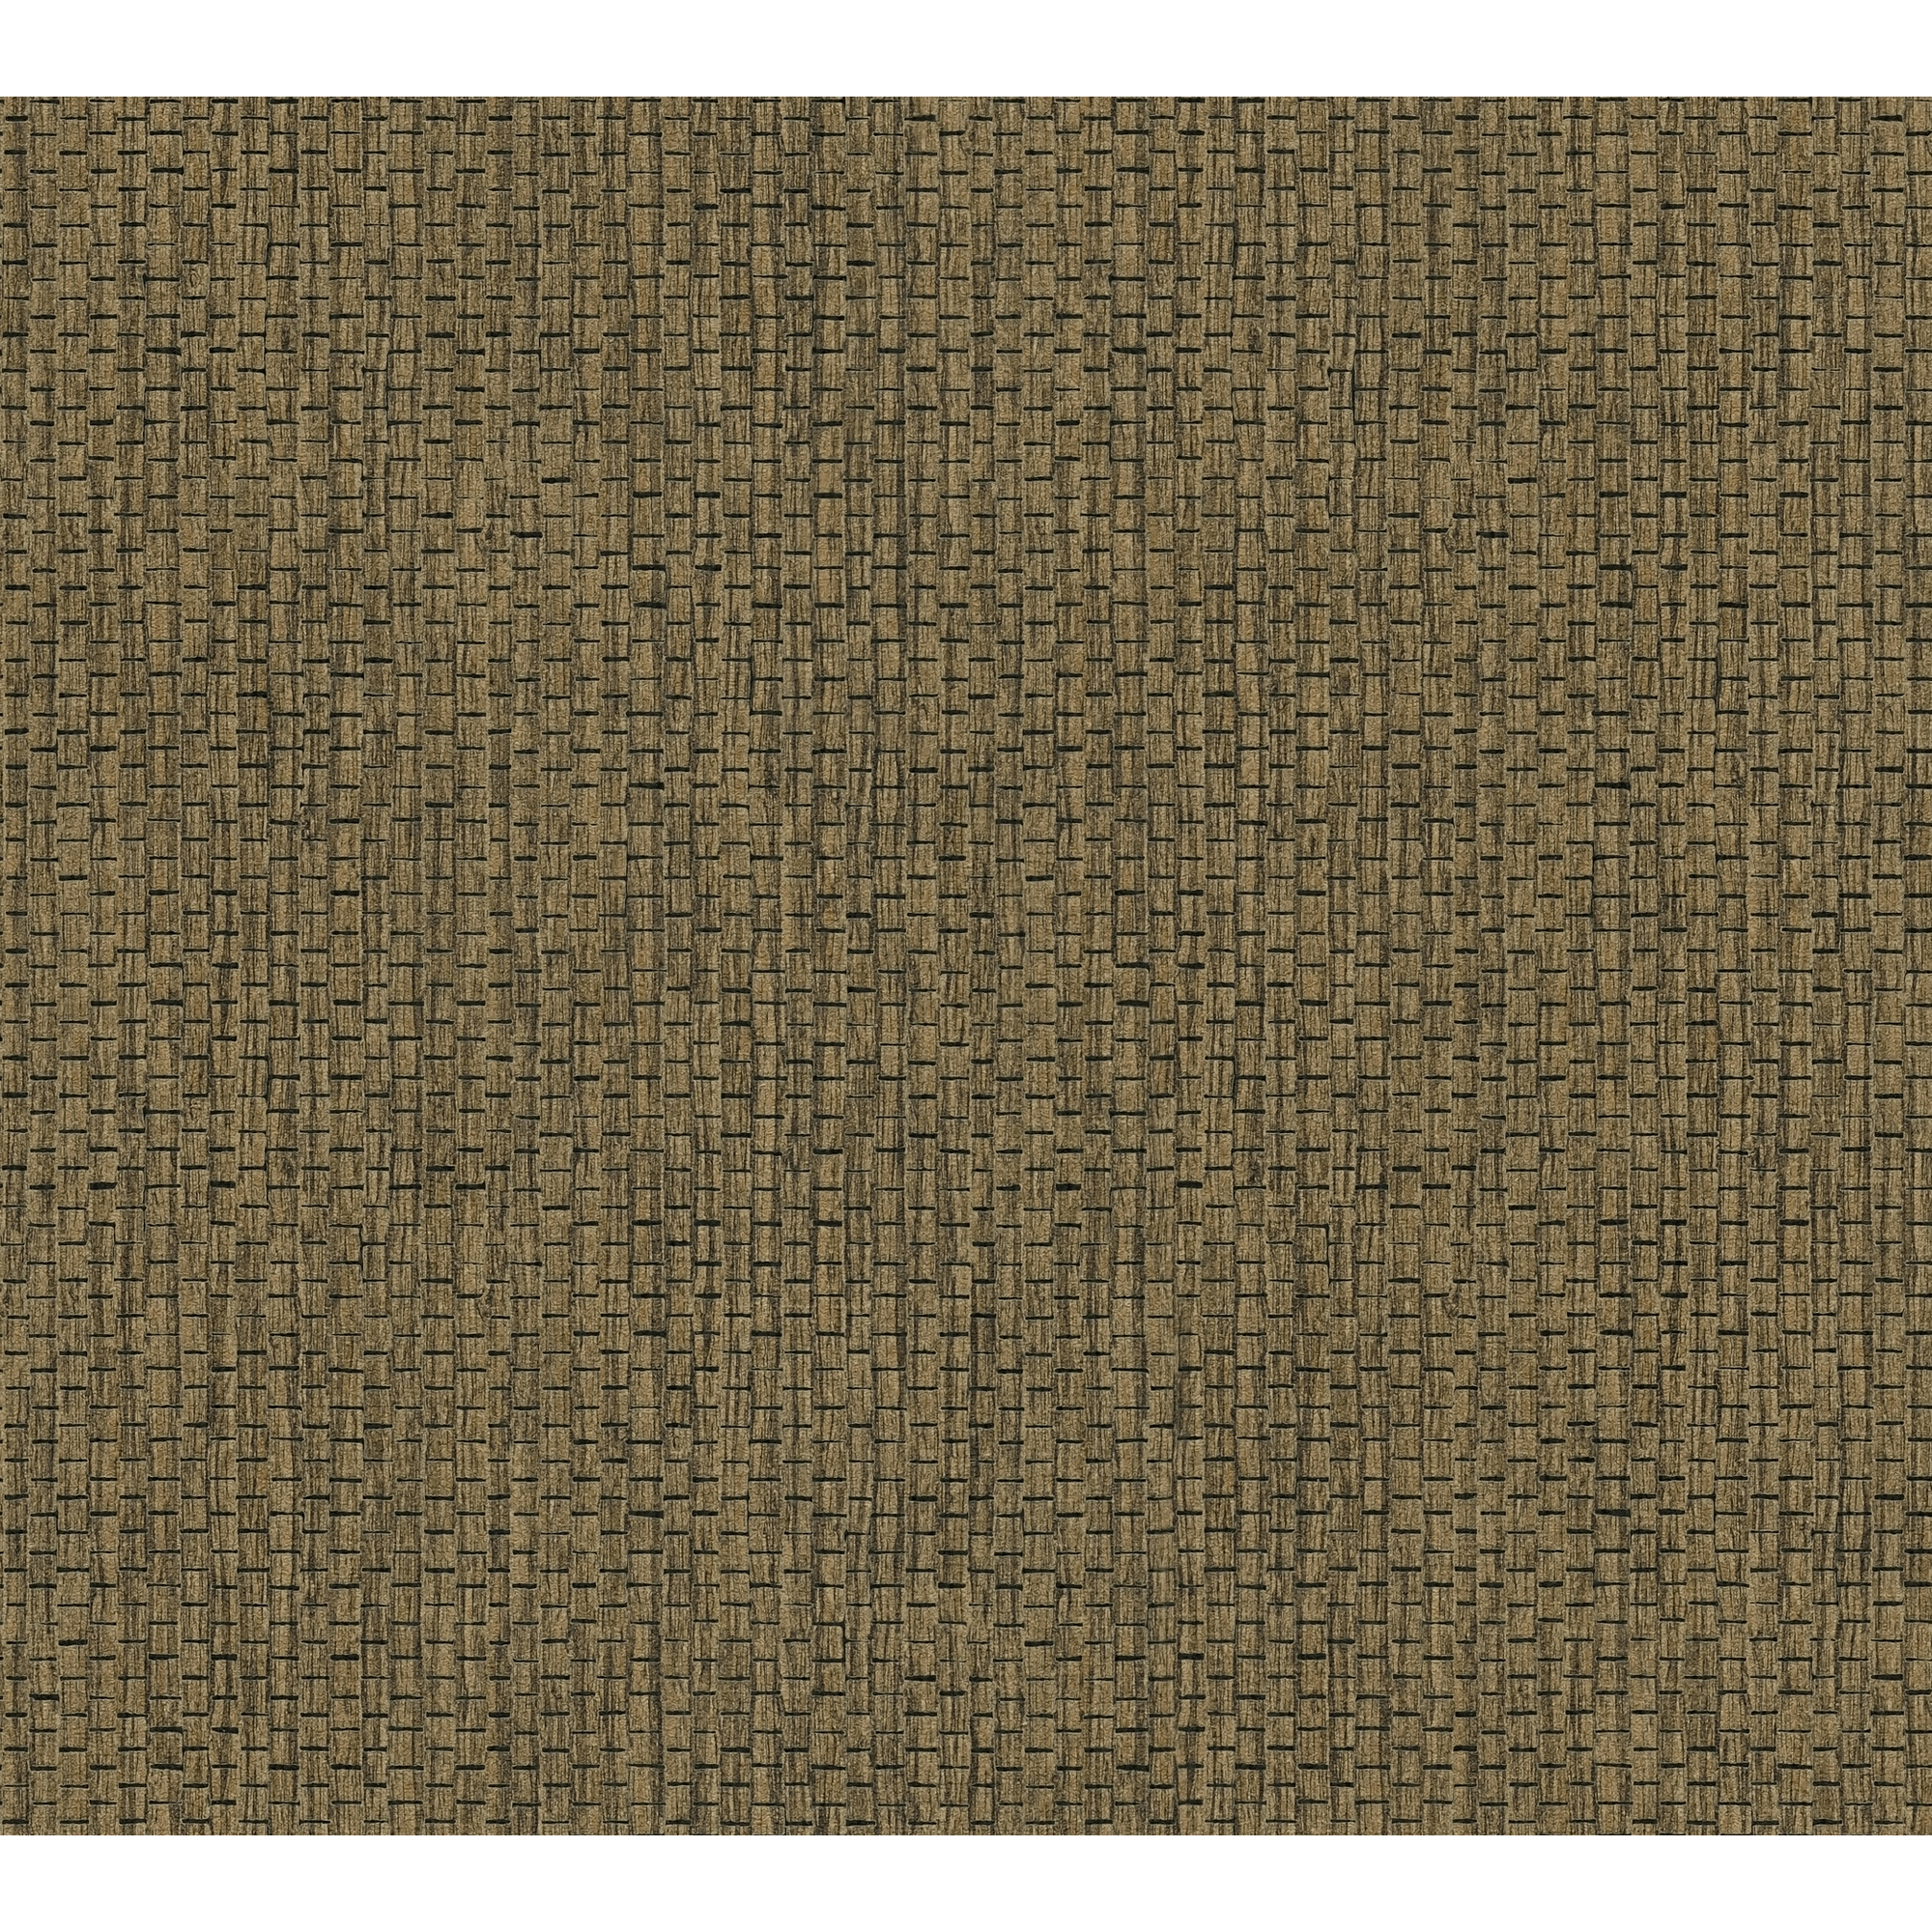 Vliestapete 'Hygge 2' Uni Gewebe strukturiert braun/schwarz 10,05 x 0,53 m + product picture